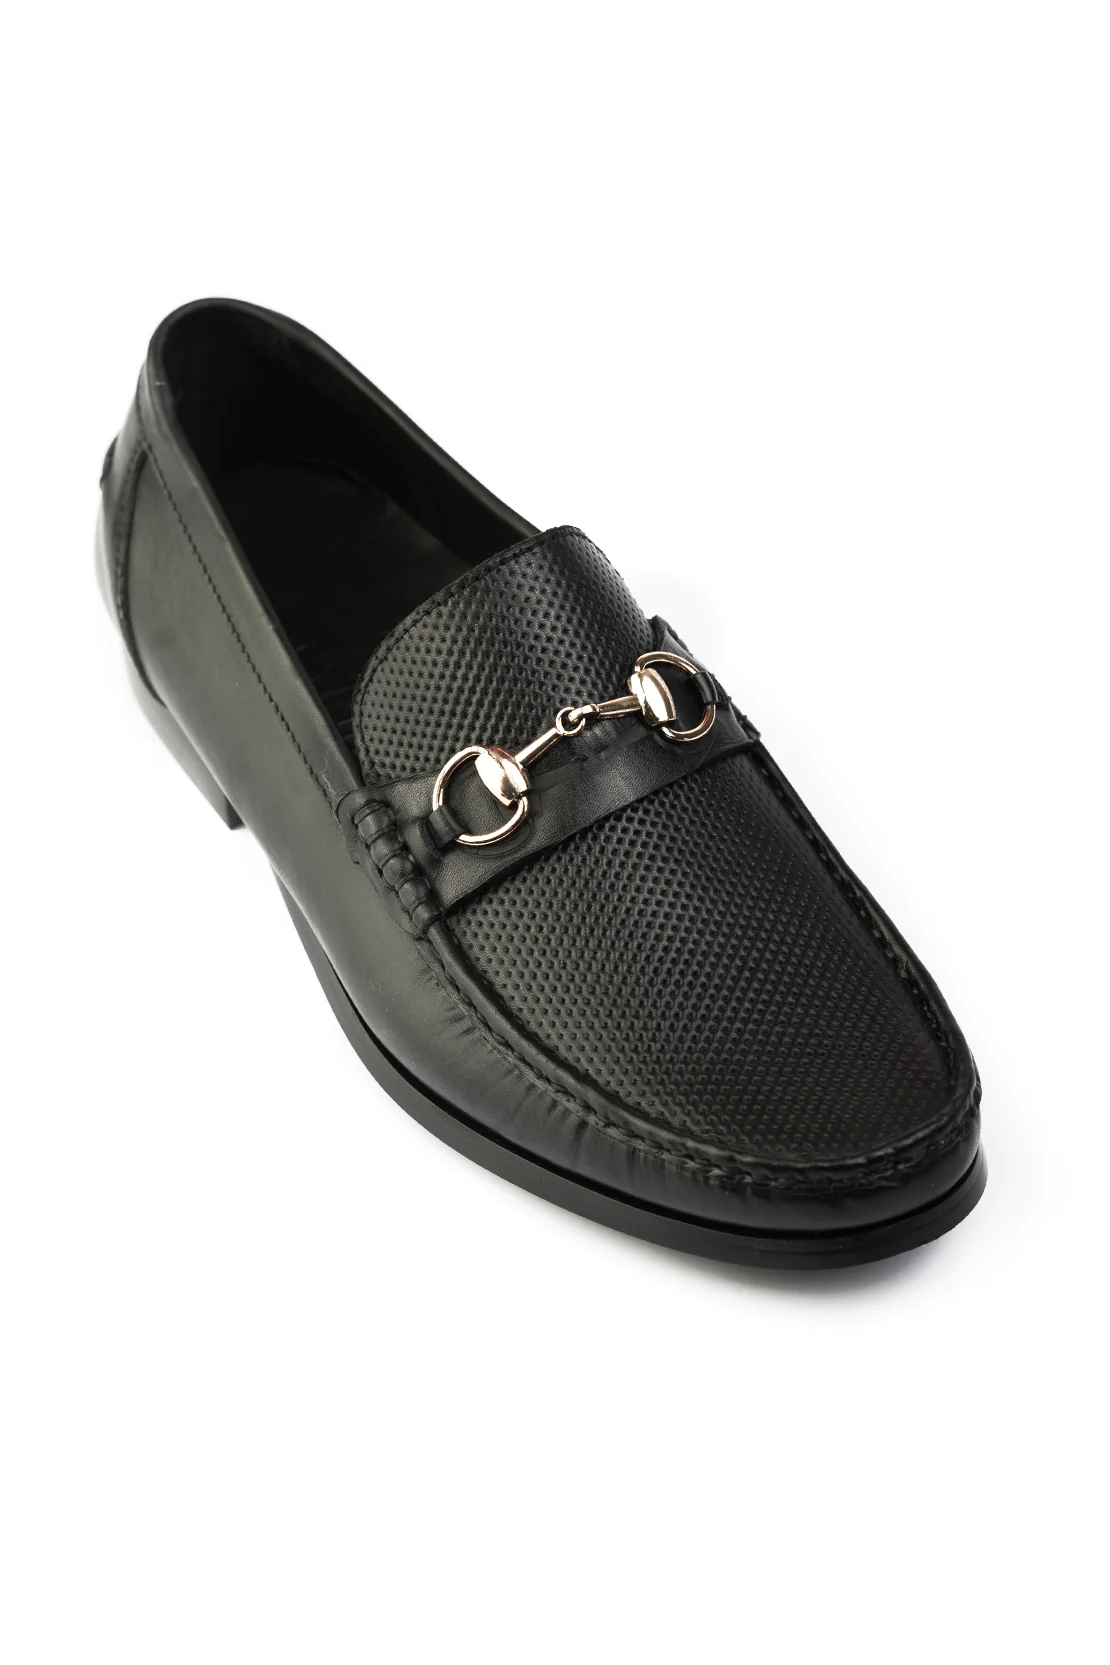 Black-Formal-Shoes-J01411-002